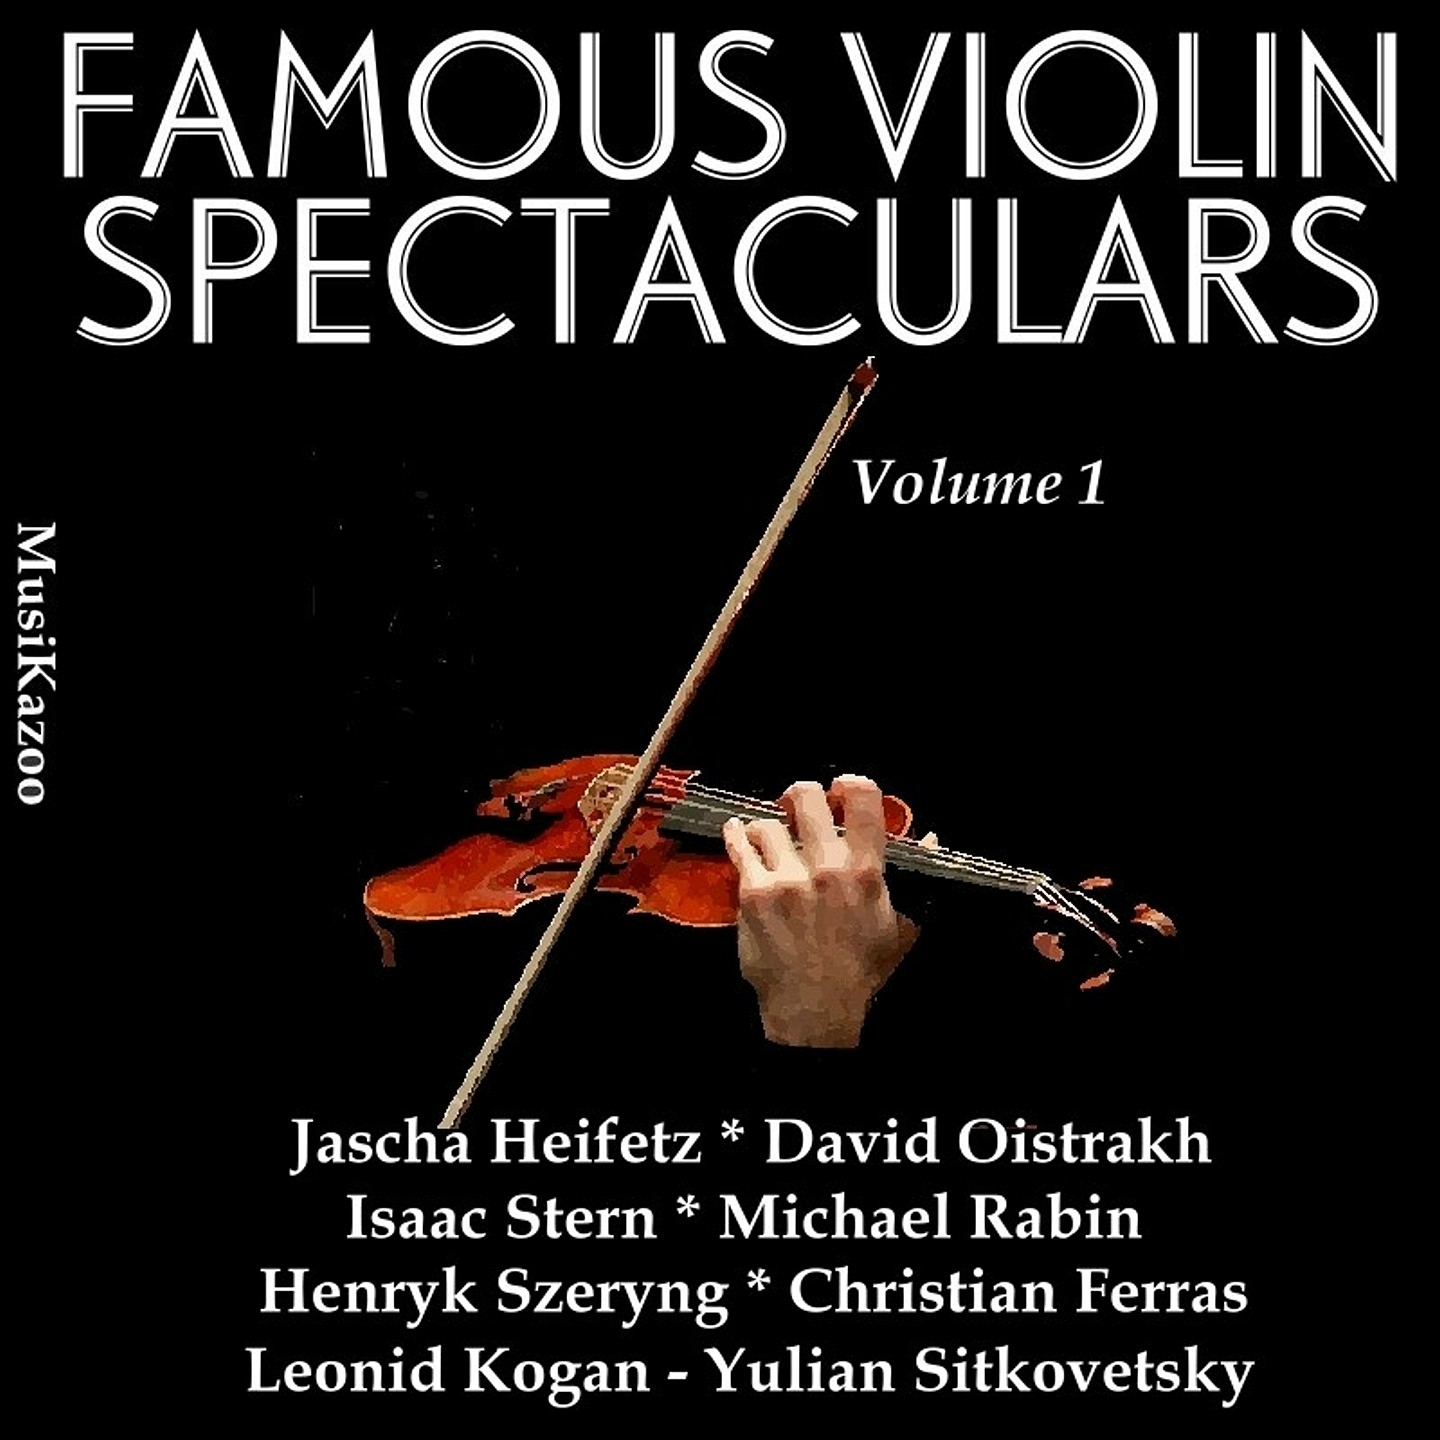 Partita No. 3 for Violin Solo